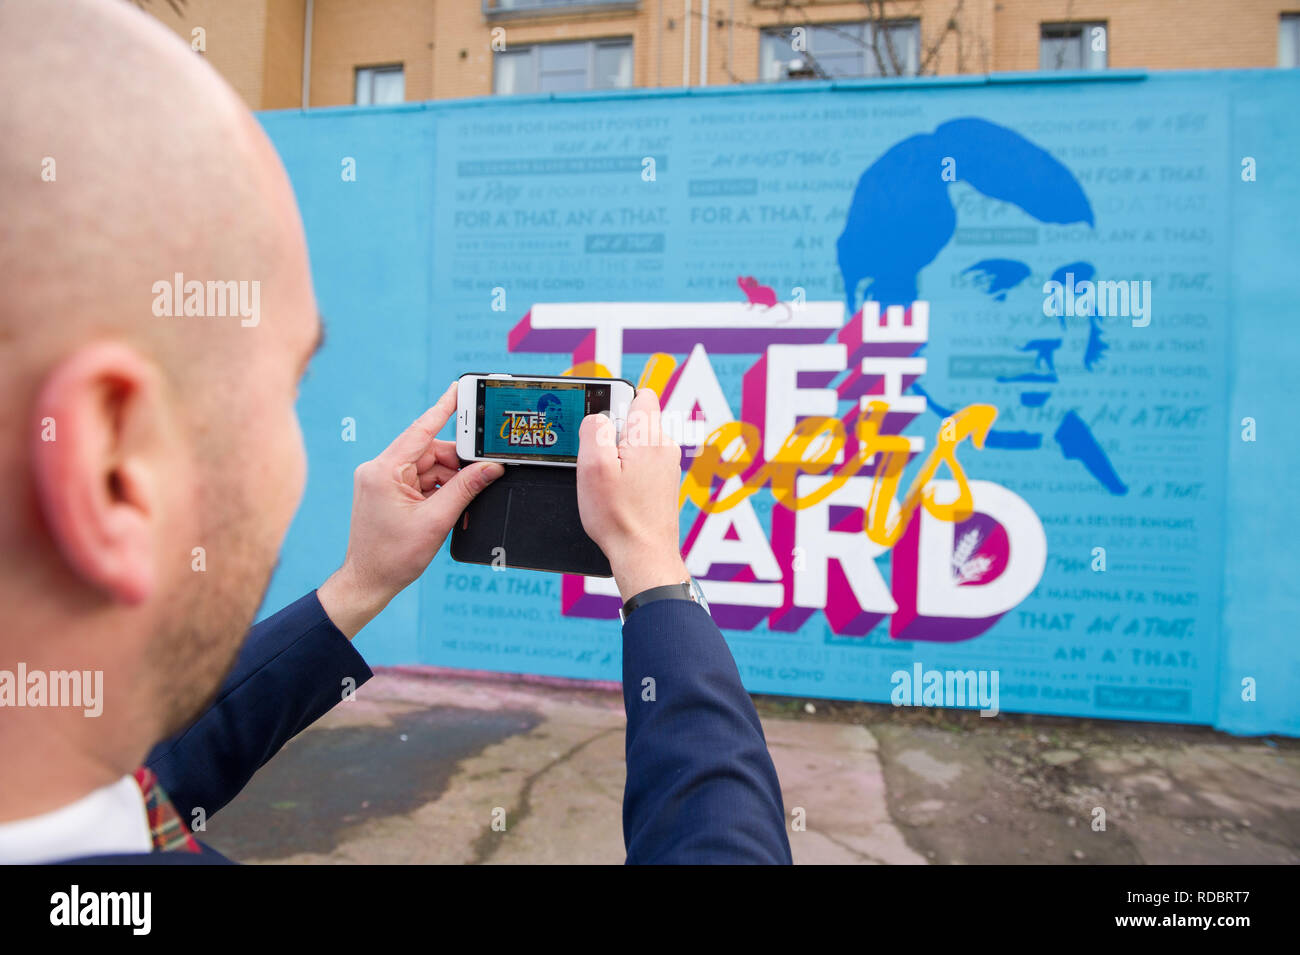 Glasgow, UK - 14. Januar 2019. Minister für Europa, Migration und internationale Entwicklung Ben Macpherson (Bild) stellt ein neues Wandbild erstellt b Stockfoto